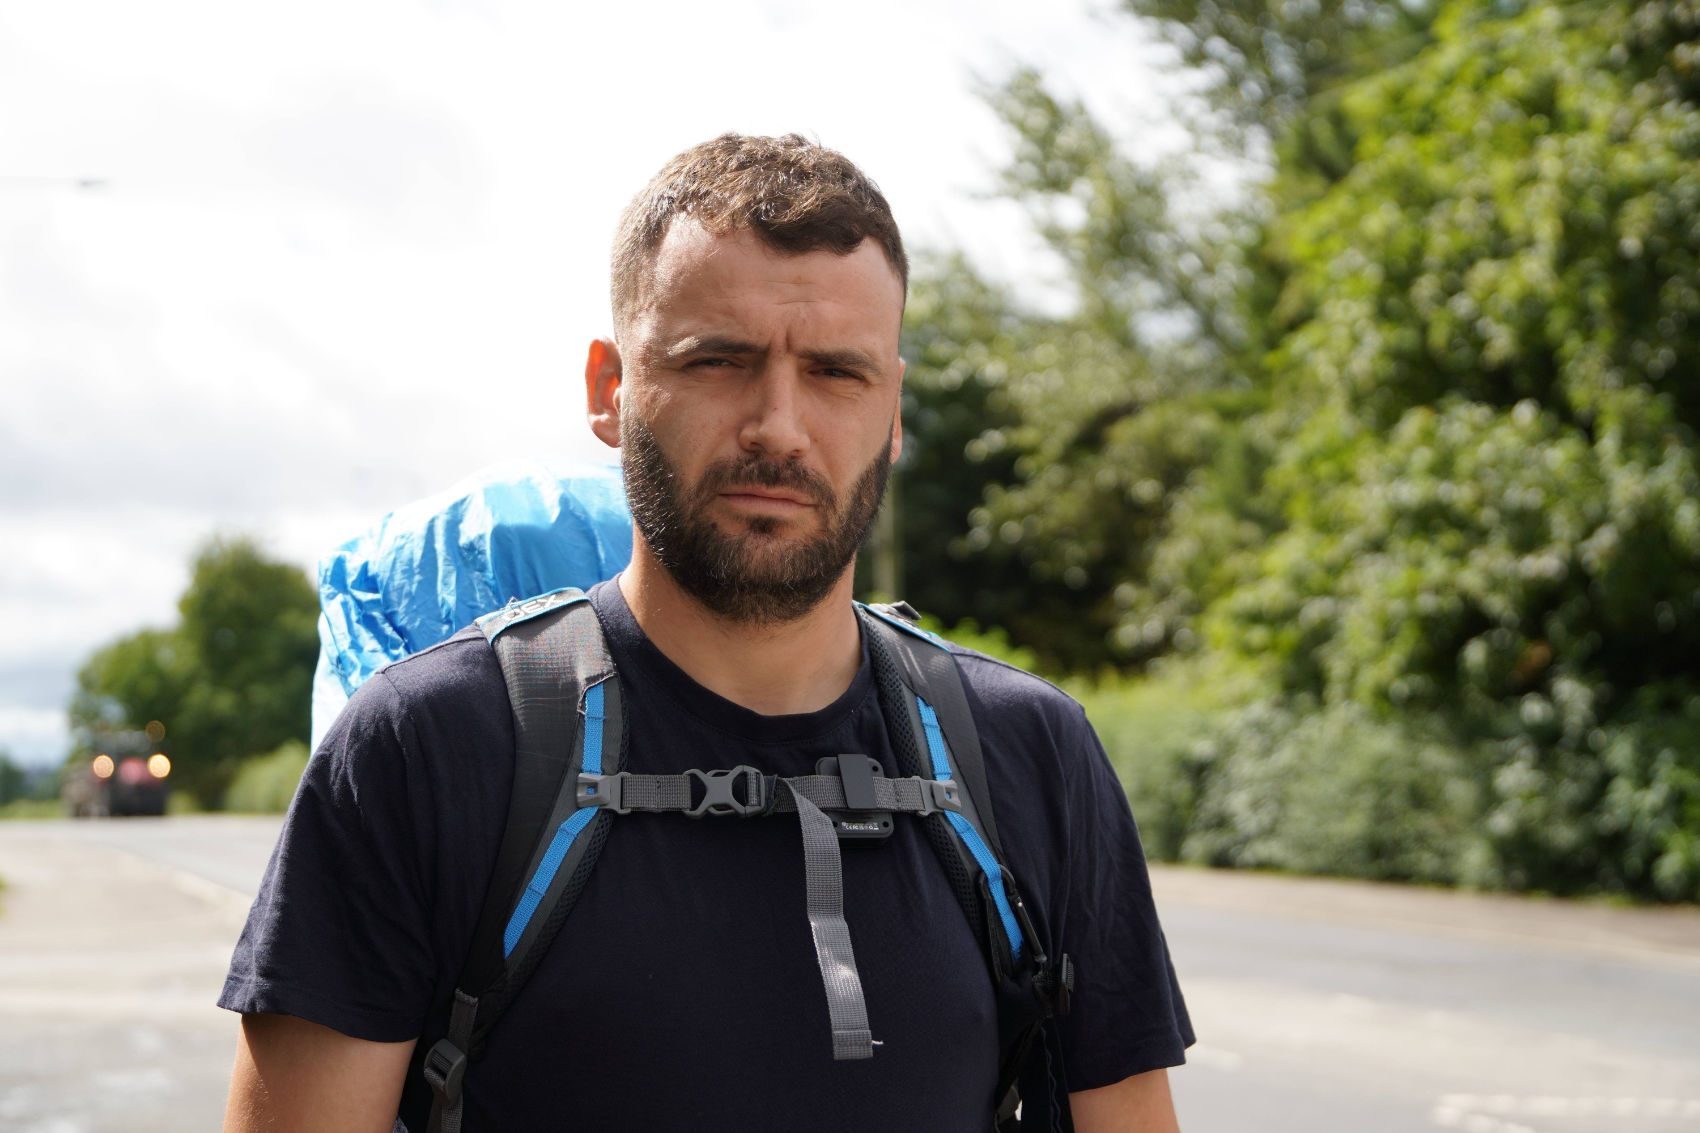 Gavin Jones, aged 33, is walking 300 miles from Swansea